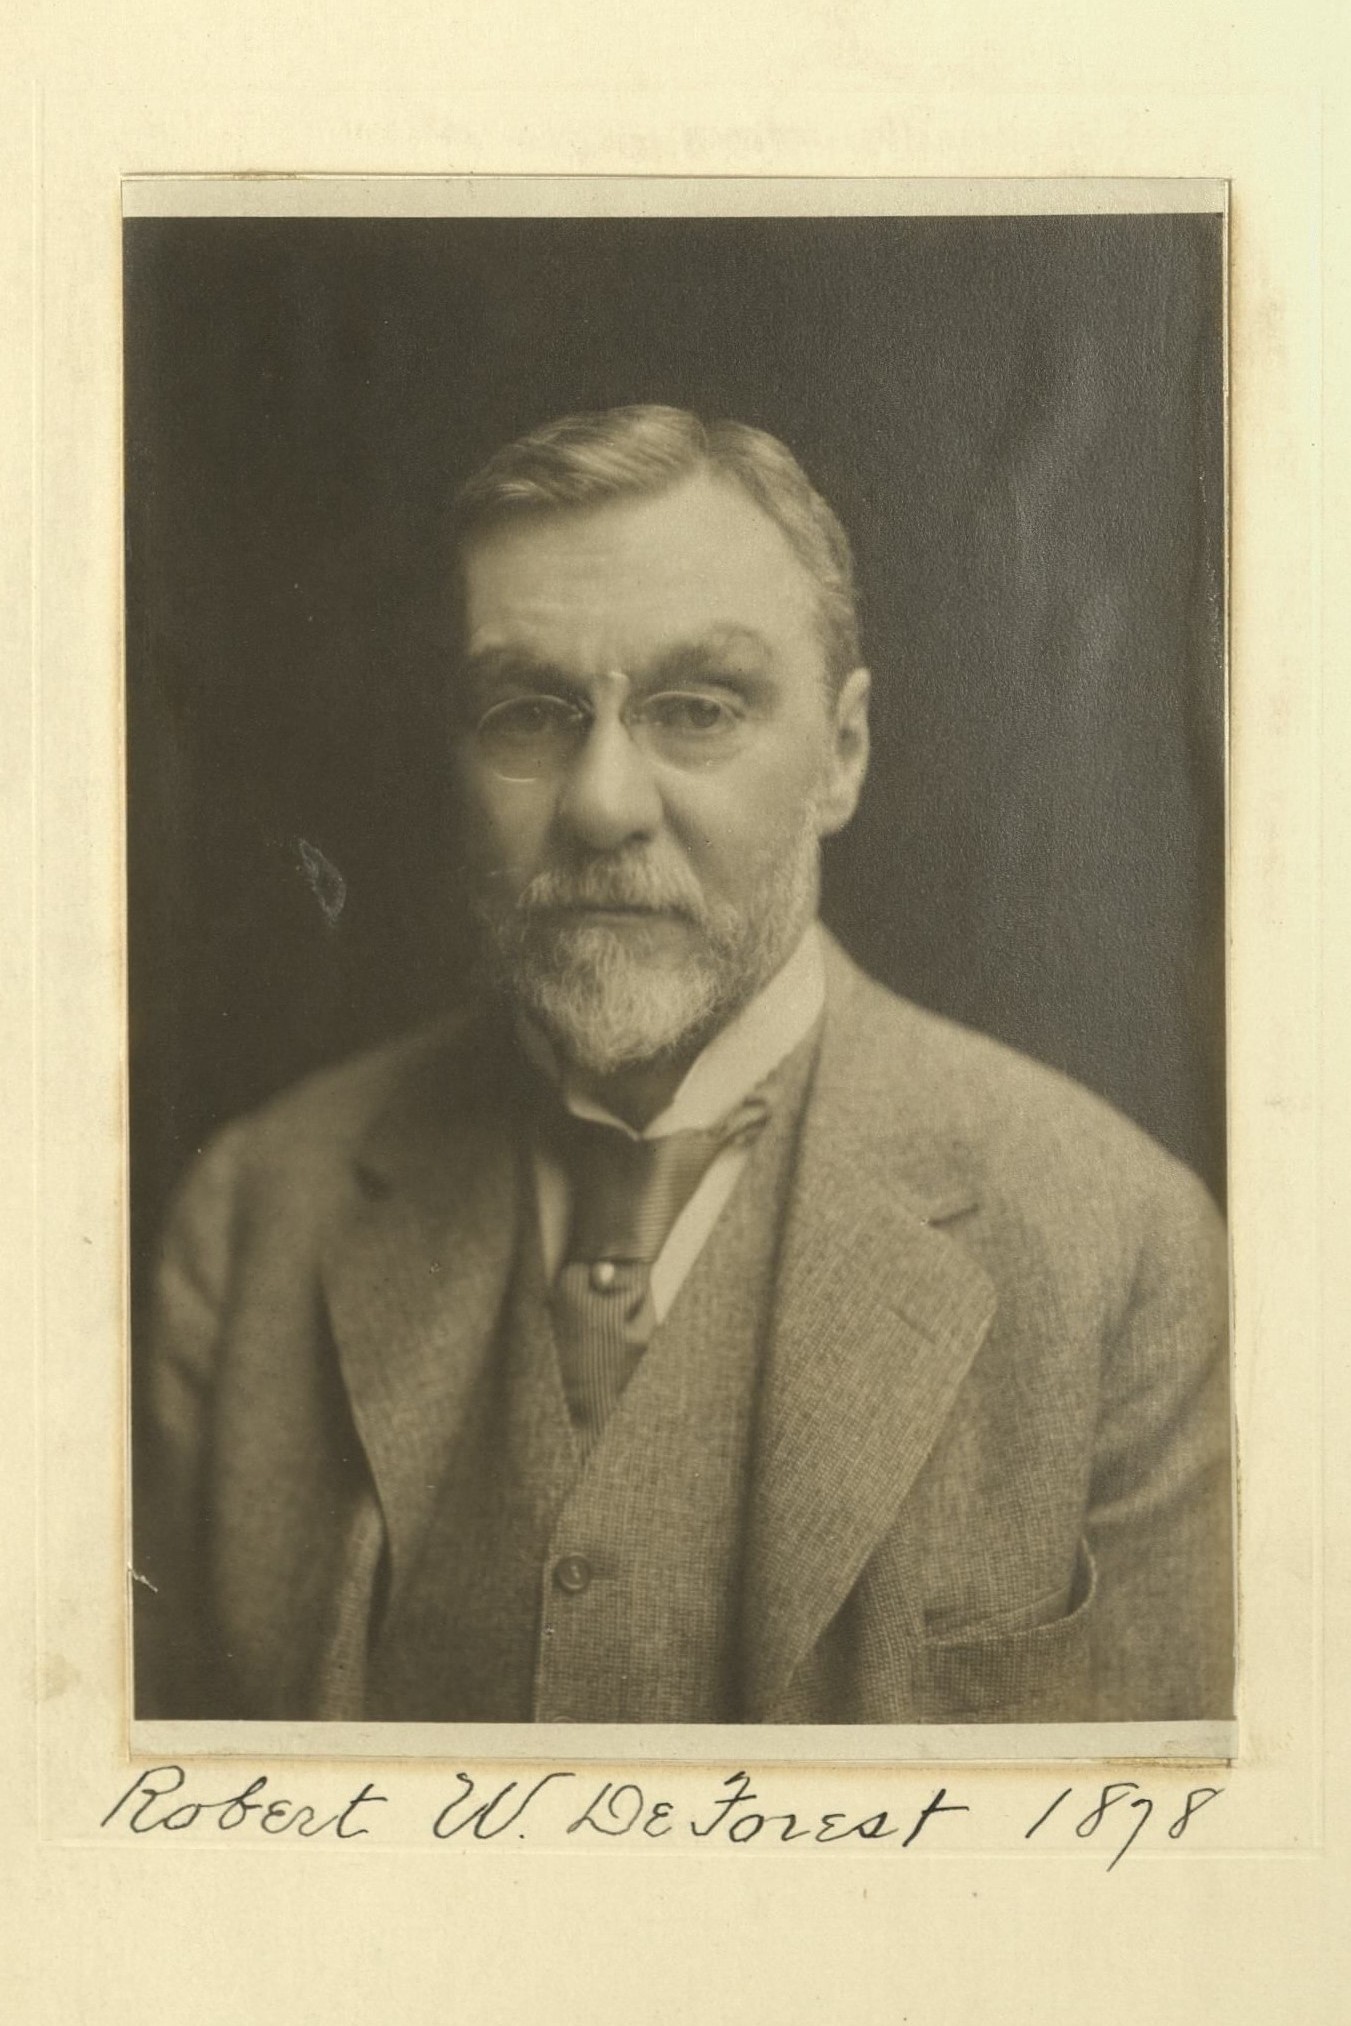 Member portrait of Robert W. de Forest